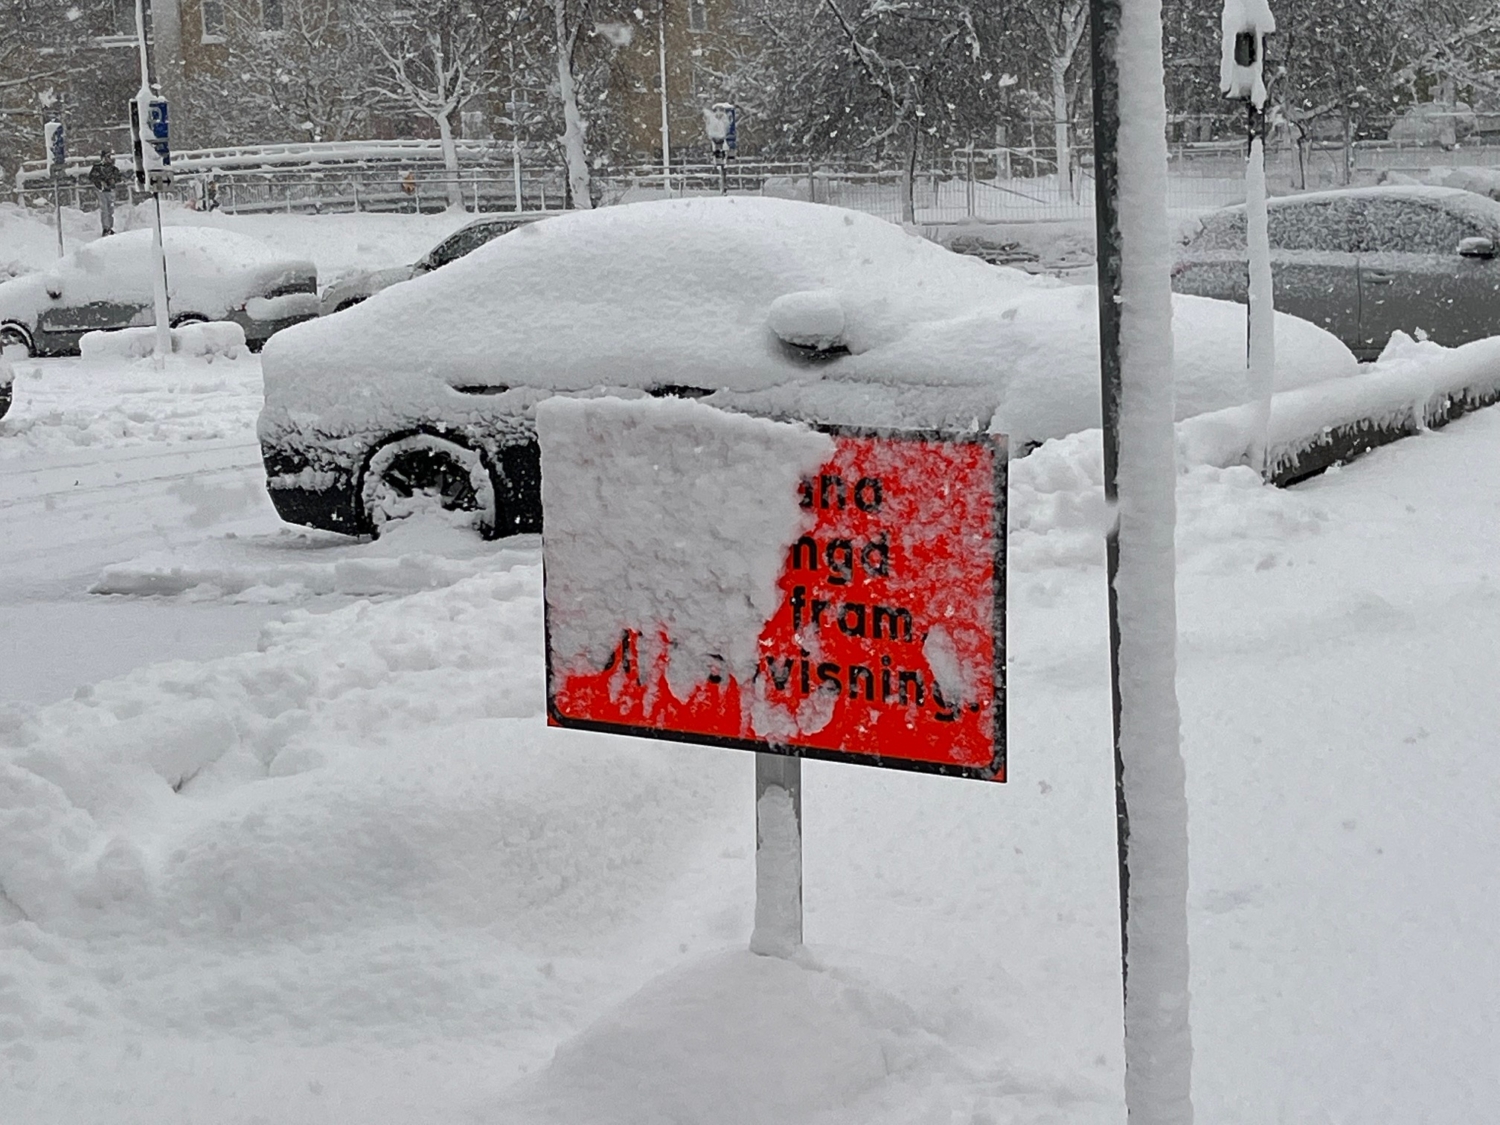 Parkerade bilar som är översnöade och en skult som knappt syns på grund av snön.